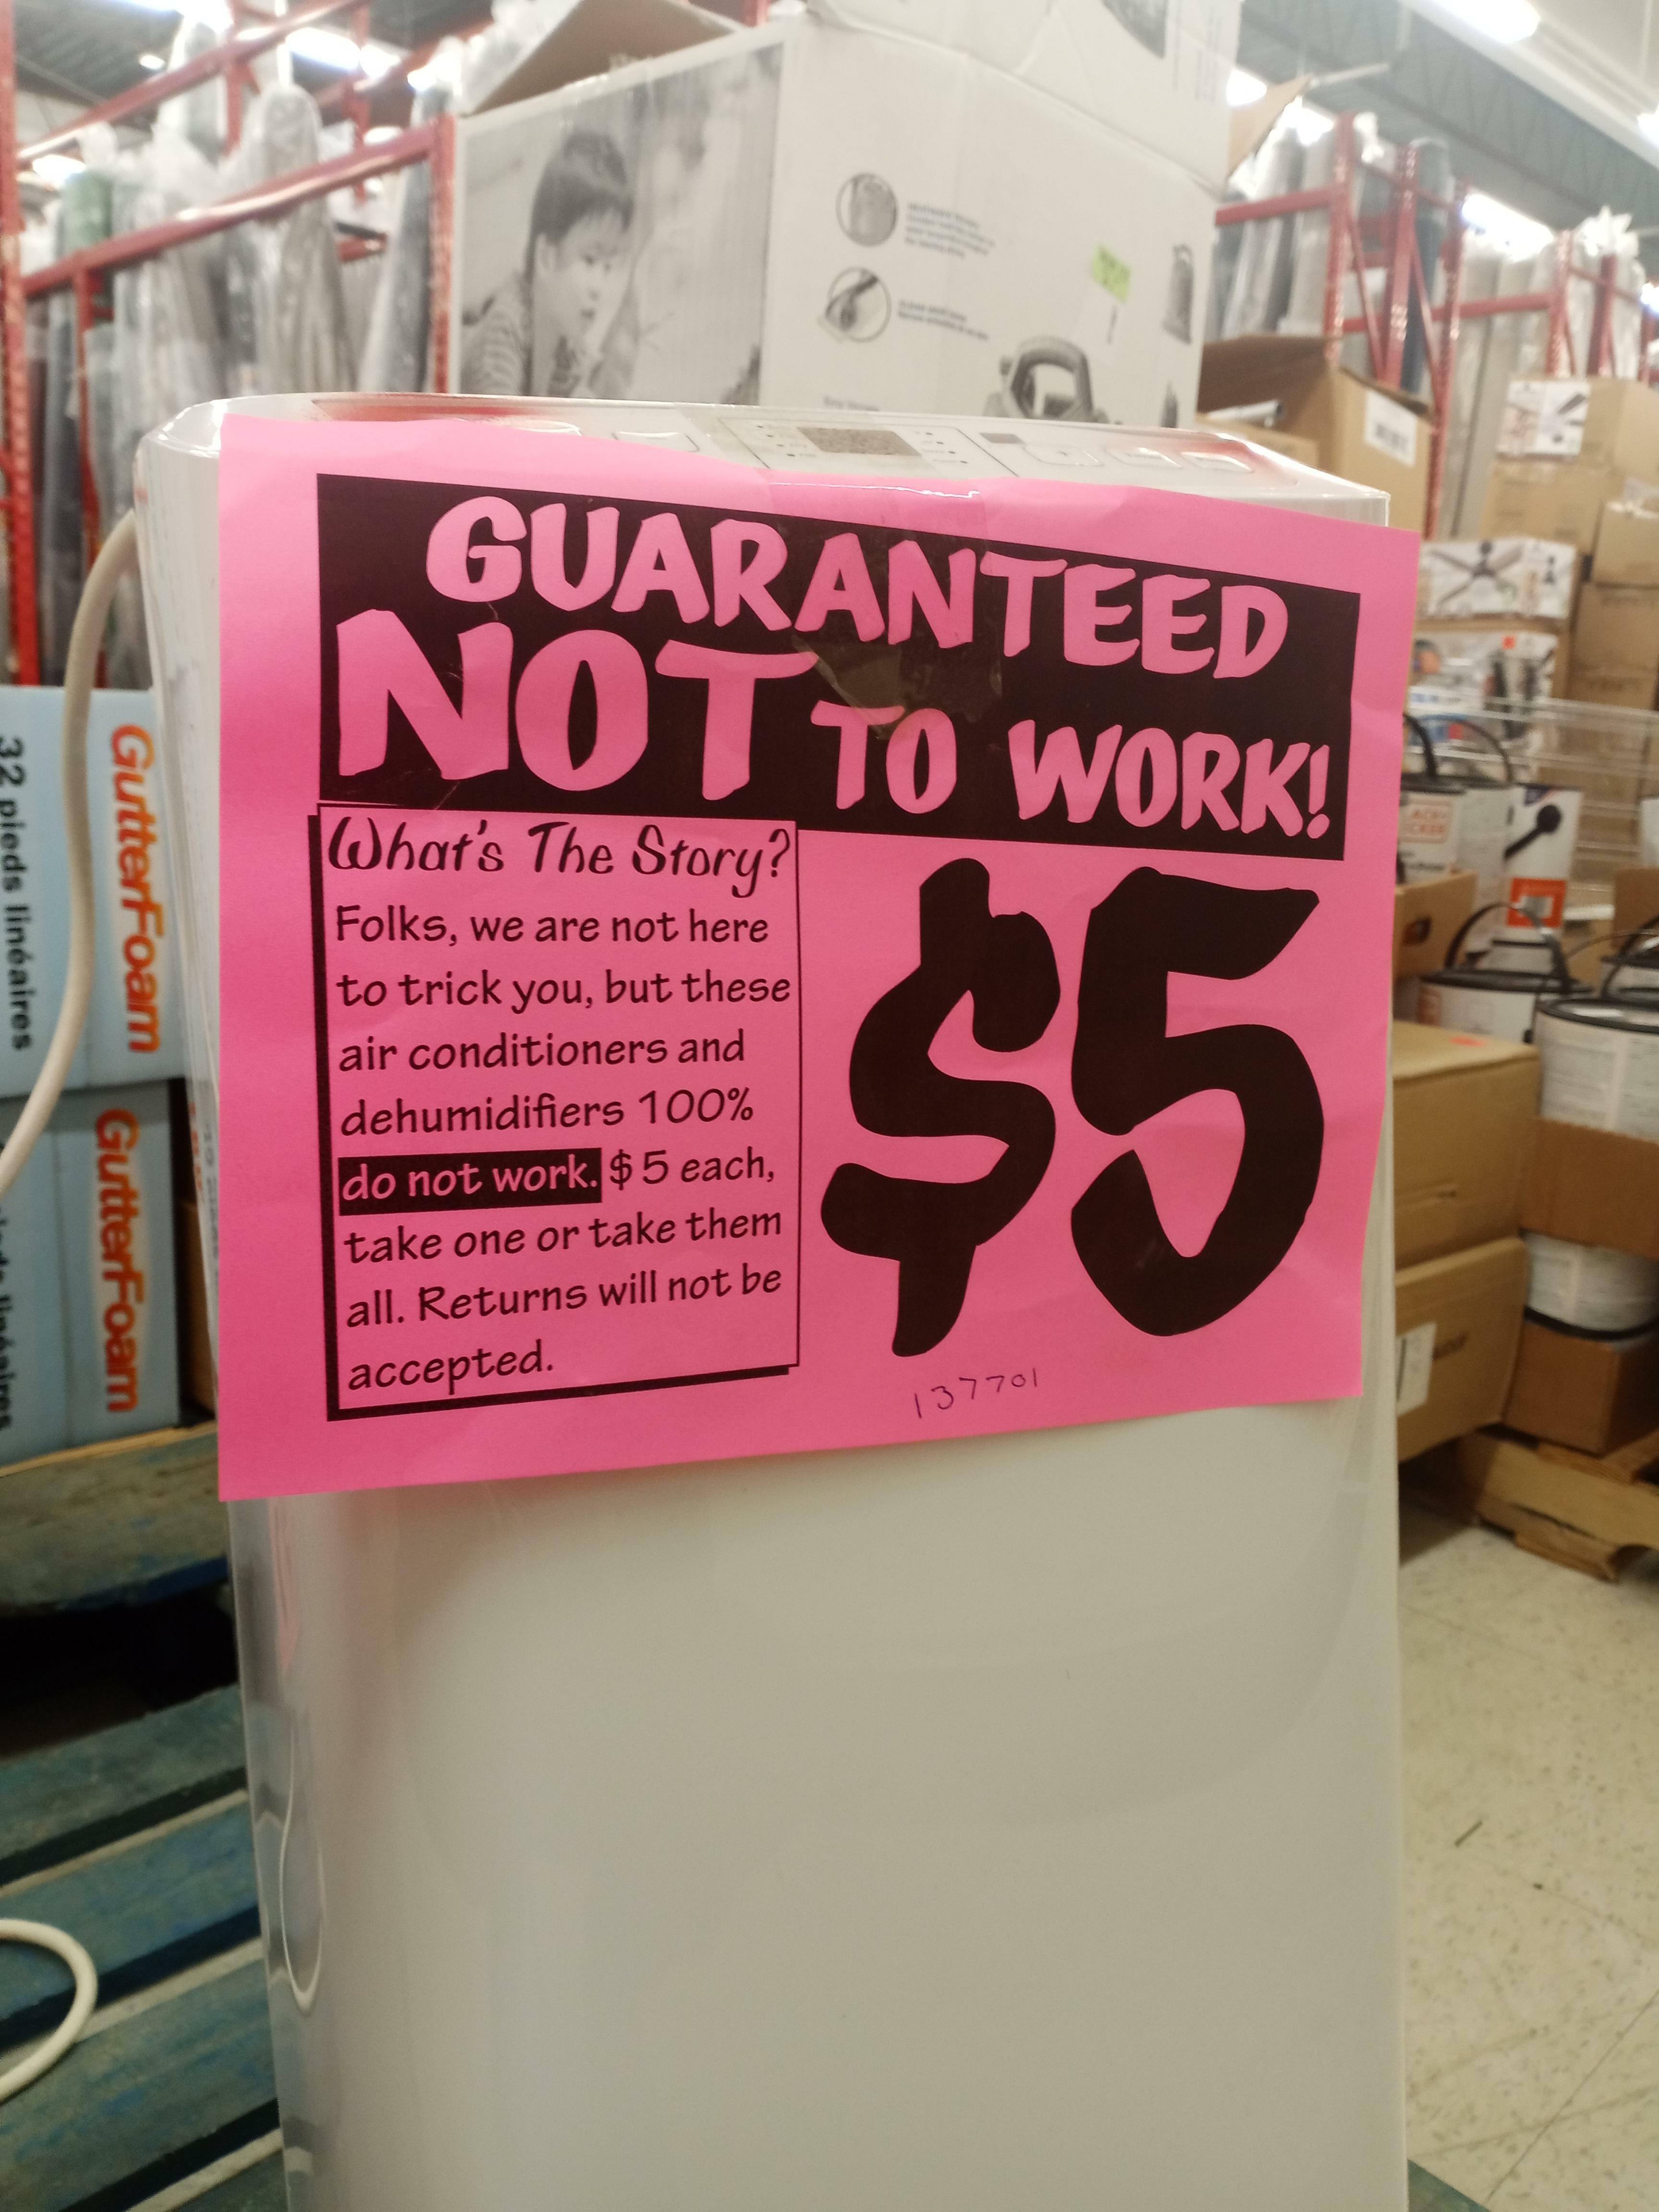 Le magasin de surplus local vend des climatiseurs qui indiquent explicitement qu'ils ne fonctionnent pas.